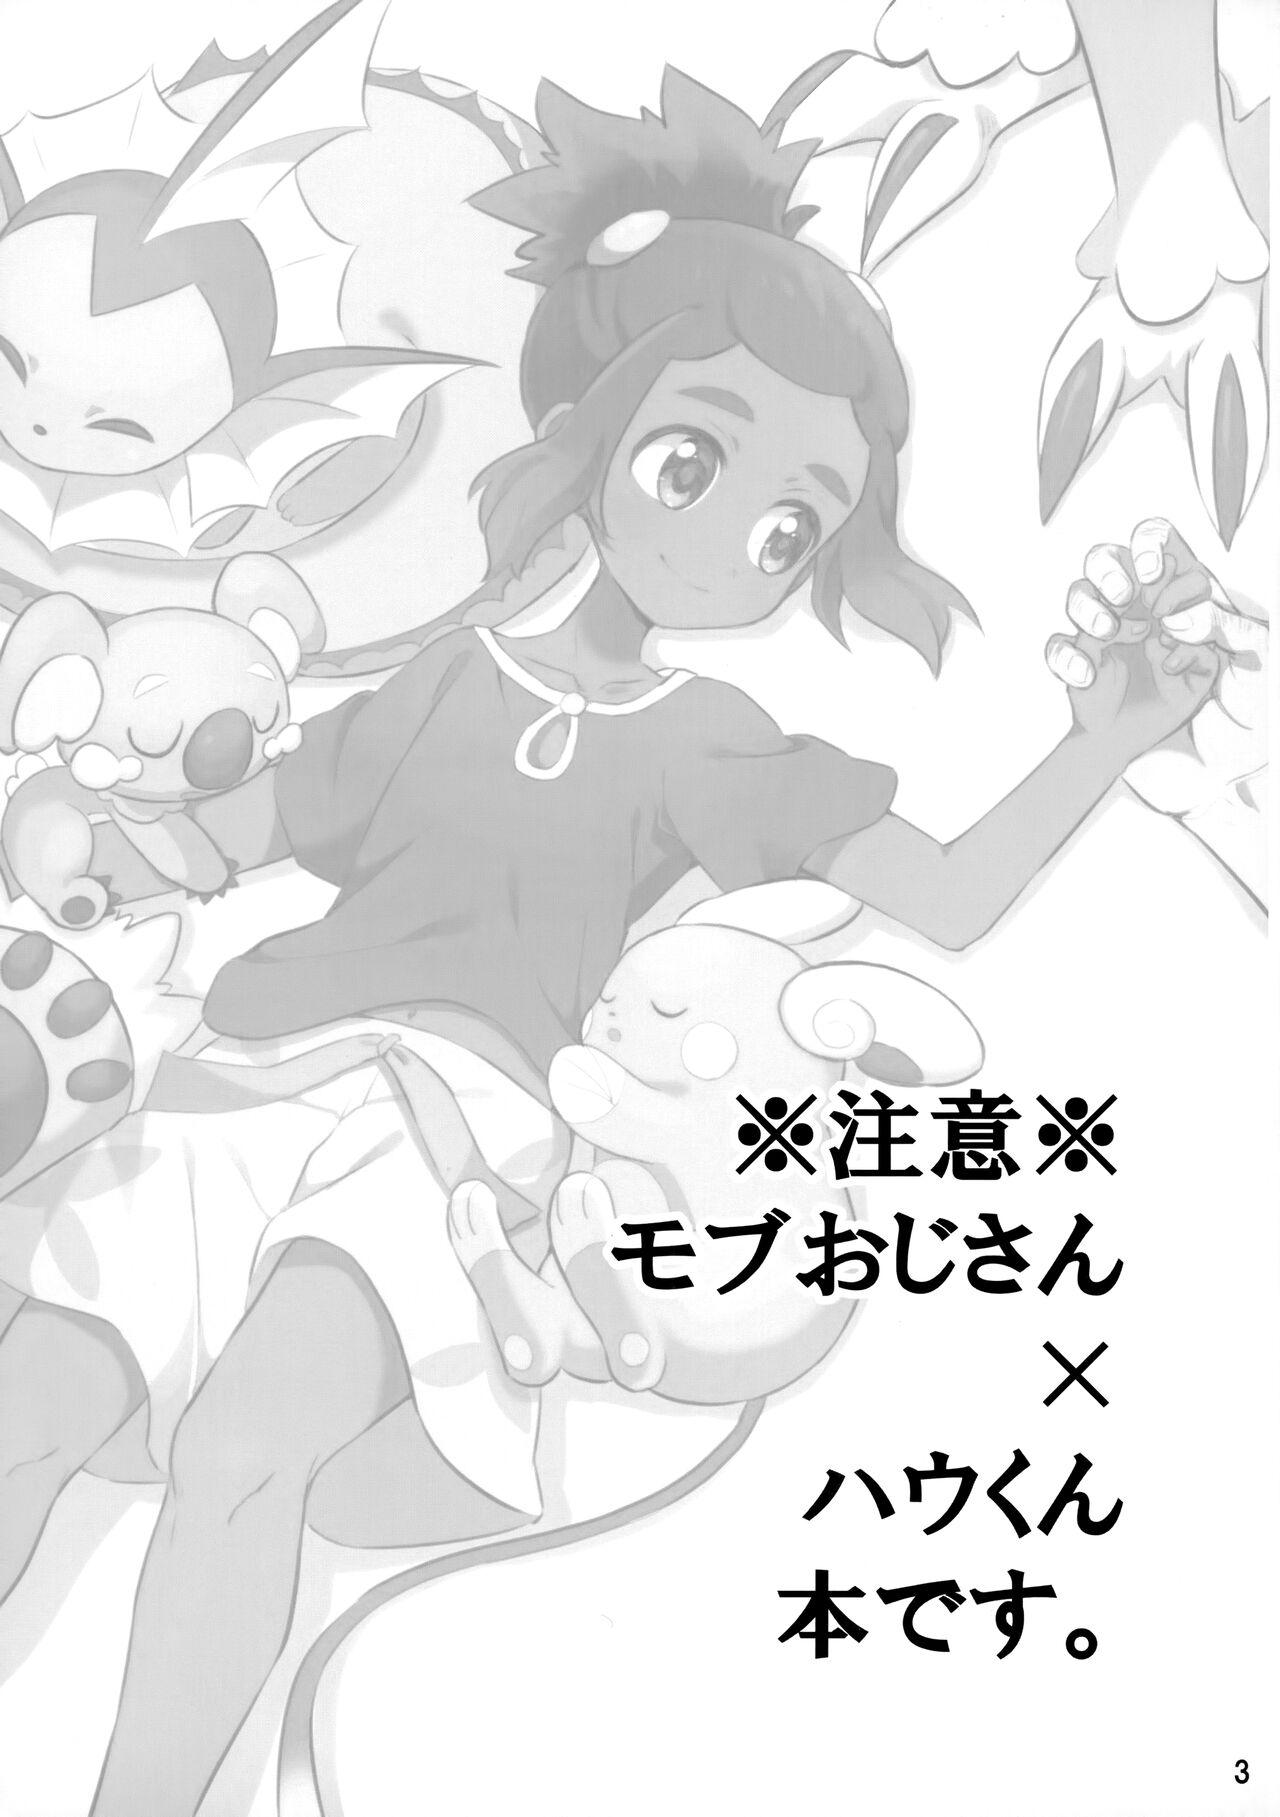 Amatures Gone Wild (Shota Scratch 33) [Karabako (Mikanbako)] Hau-kun ga Oji-san o Temochi ni Kuwaeru Hanashi (Pokémon Sun and Moon) - Pokemon | pocket monsters This - Picture 2